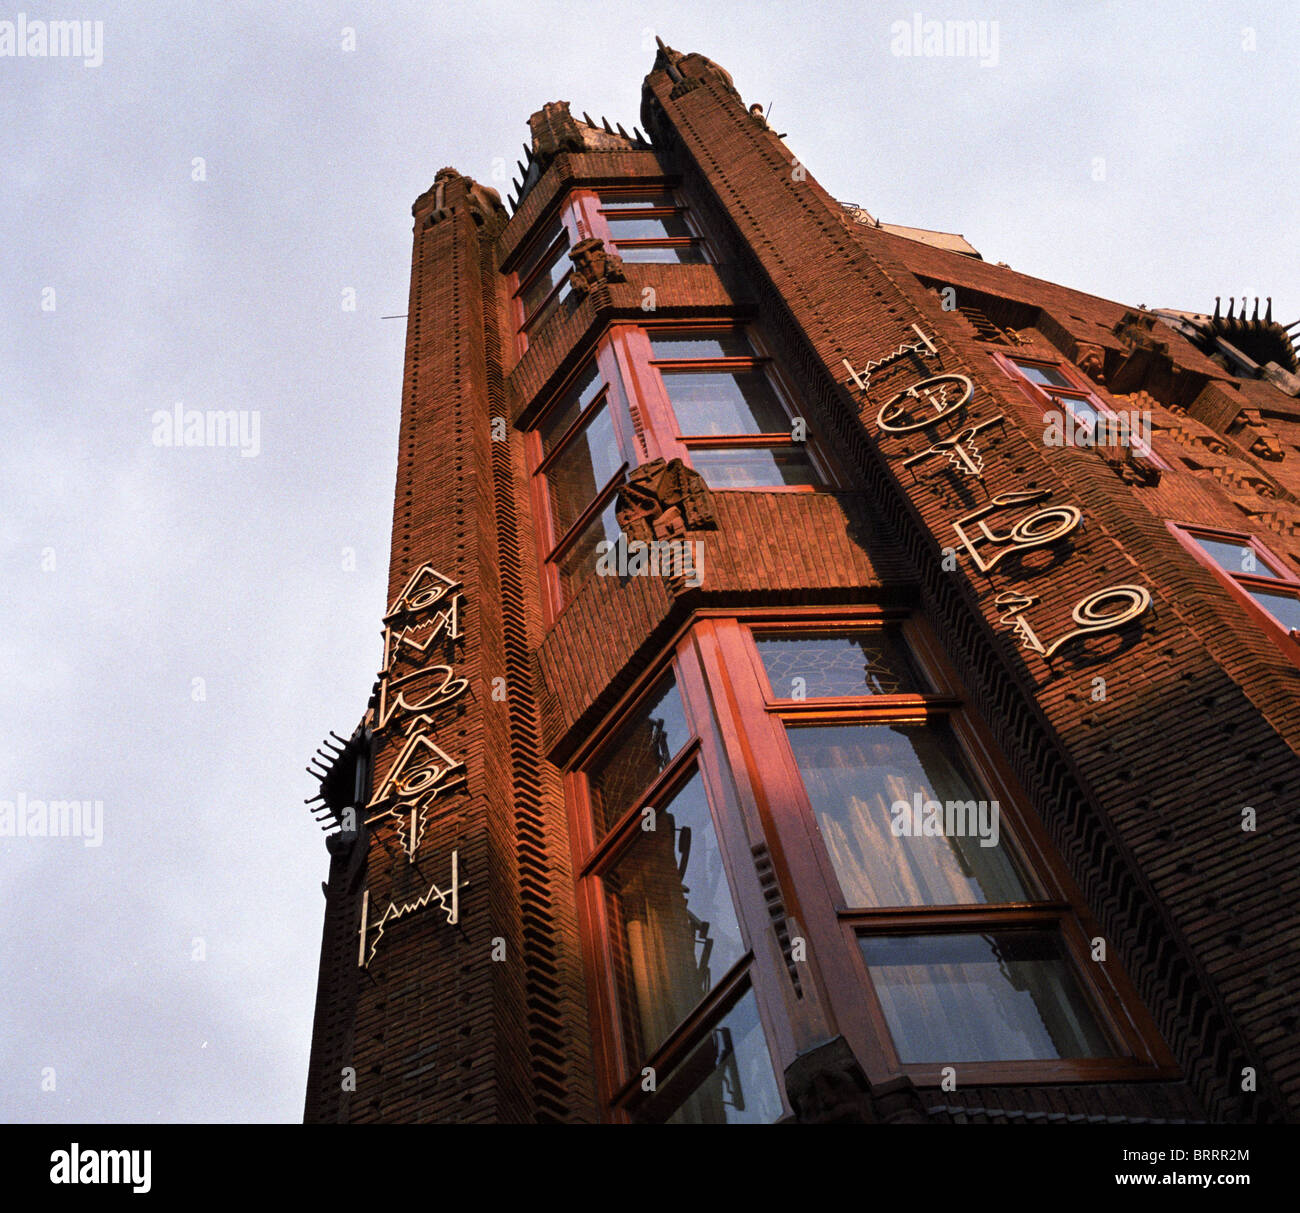 Das Grand Hotel Amrâth, Amsterdam. Früher die Hafenschifffahrt Haus Beibehaltung viele architektonische Merkmale seiner Vergangenheit. Luxushotels. Stockfoto